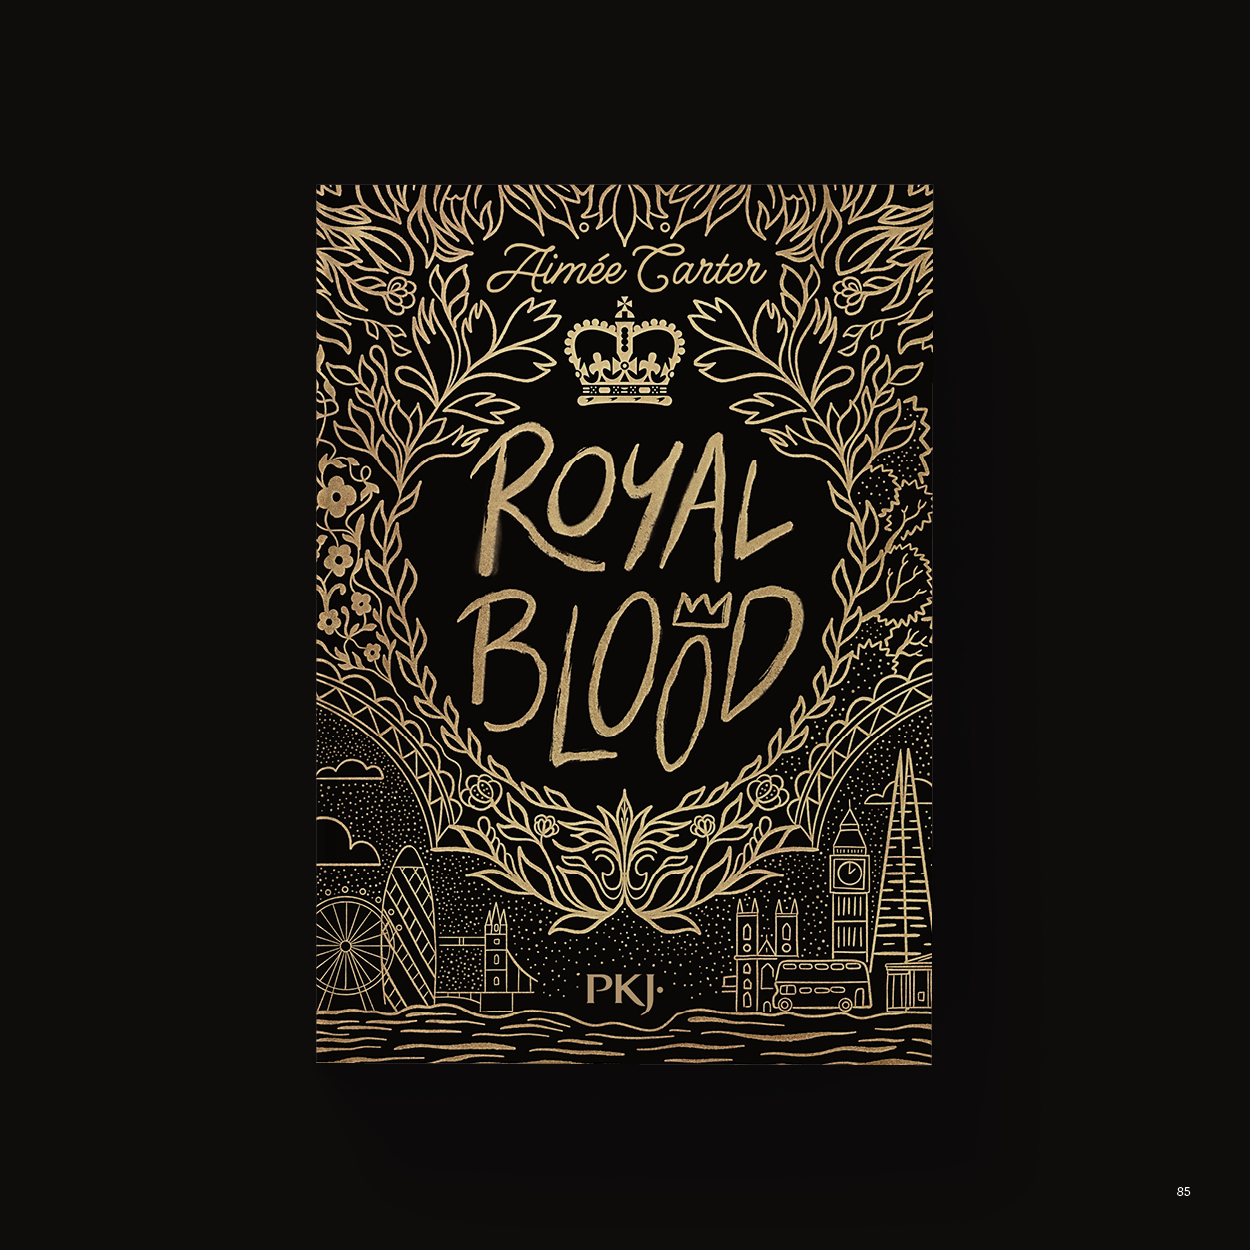 Vue_Royal_blood_85